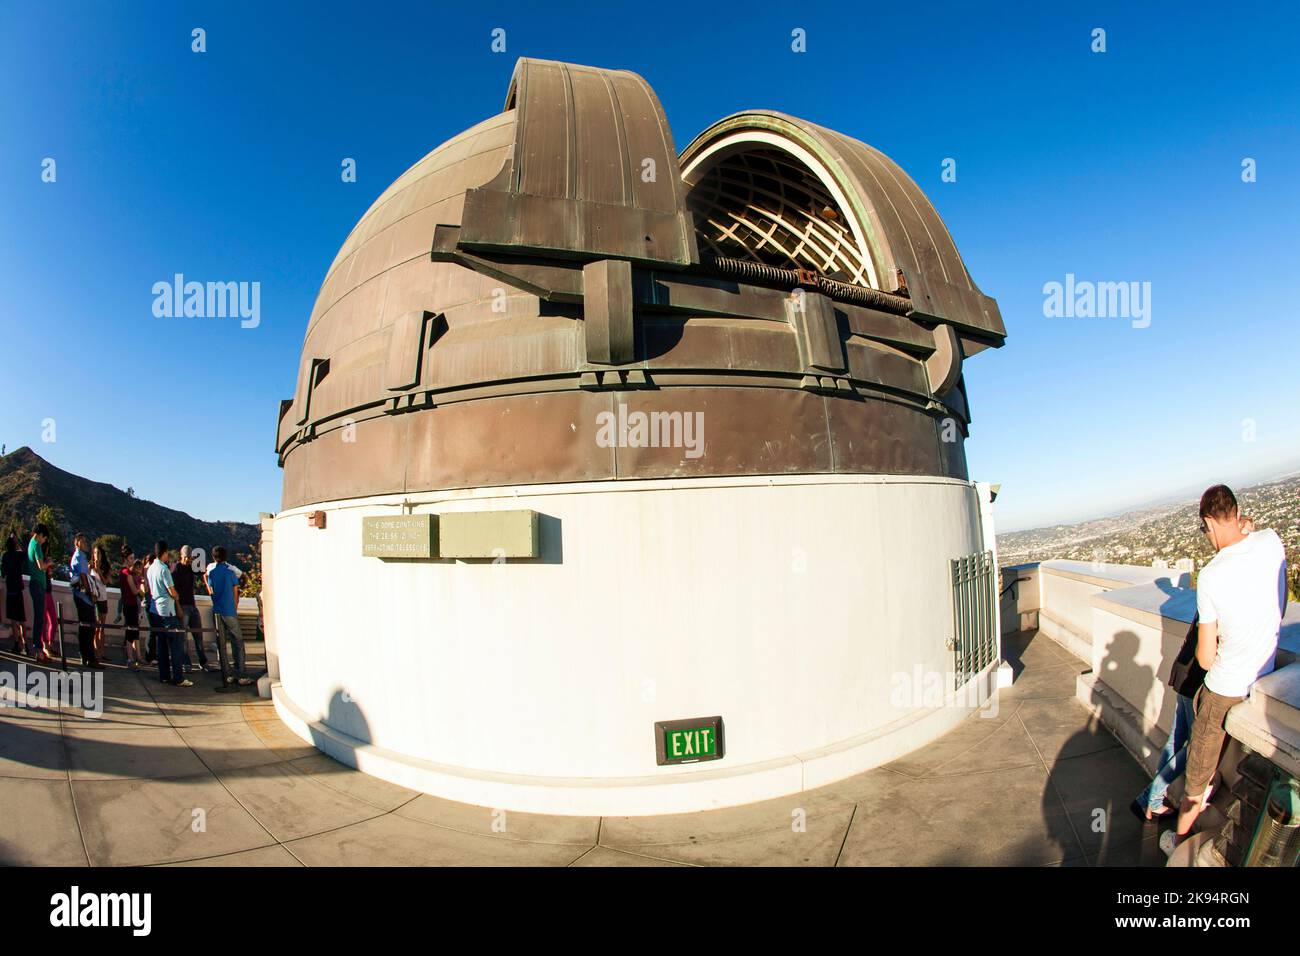 LOS ANGELES, USA - 24 GIUGNO: Il famoso osservatorio Griffith è aperto a guardare la costellazione della luna il 24 giugno 2012 a Los Angeles, USA. La gente guarda t Foto Stock